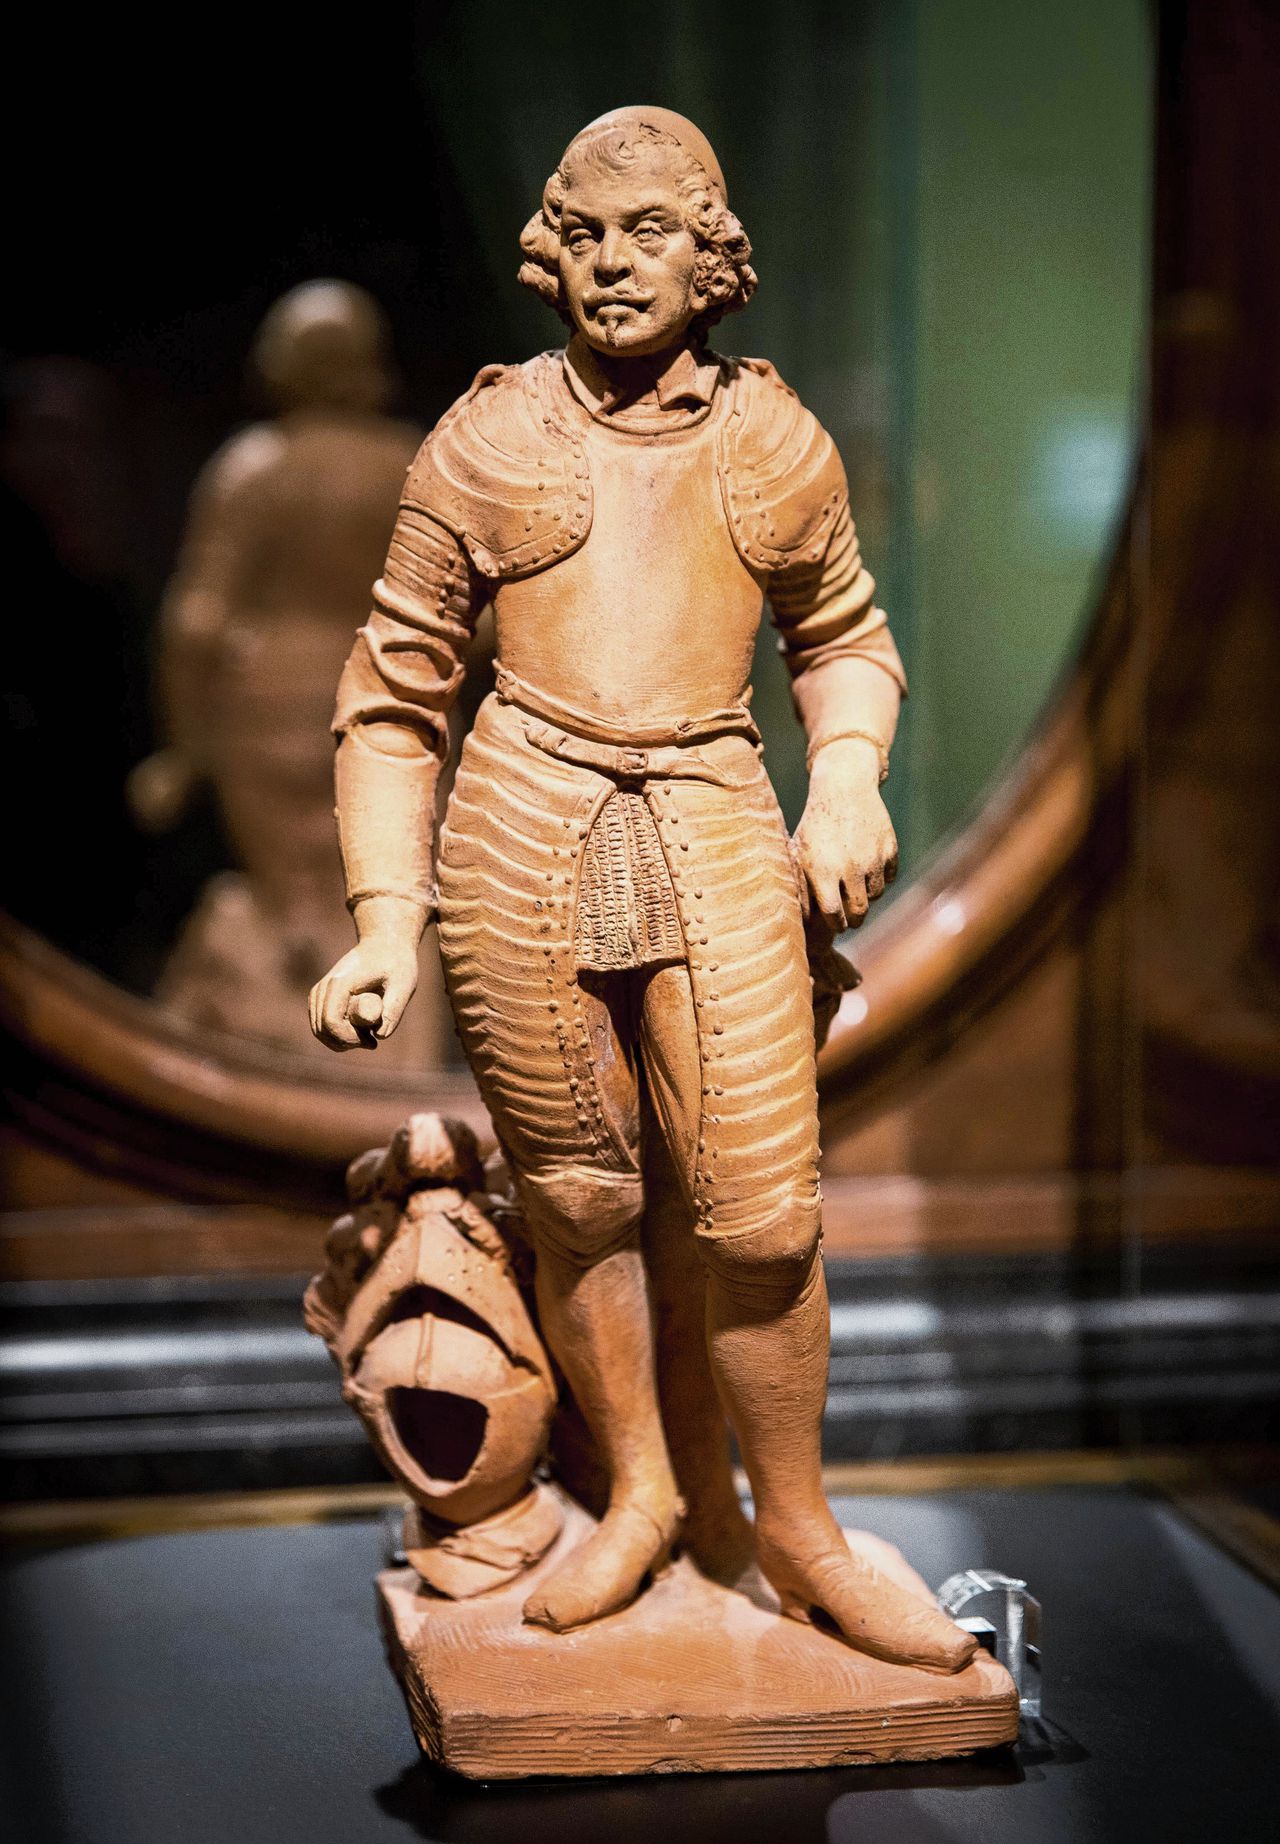 Het terracotta beeldje van Johan Maurits van Nassau-Siegen – niet het origineel van de weggehaalde buste.